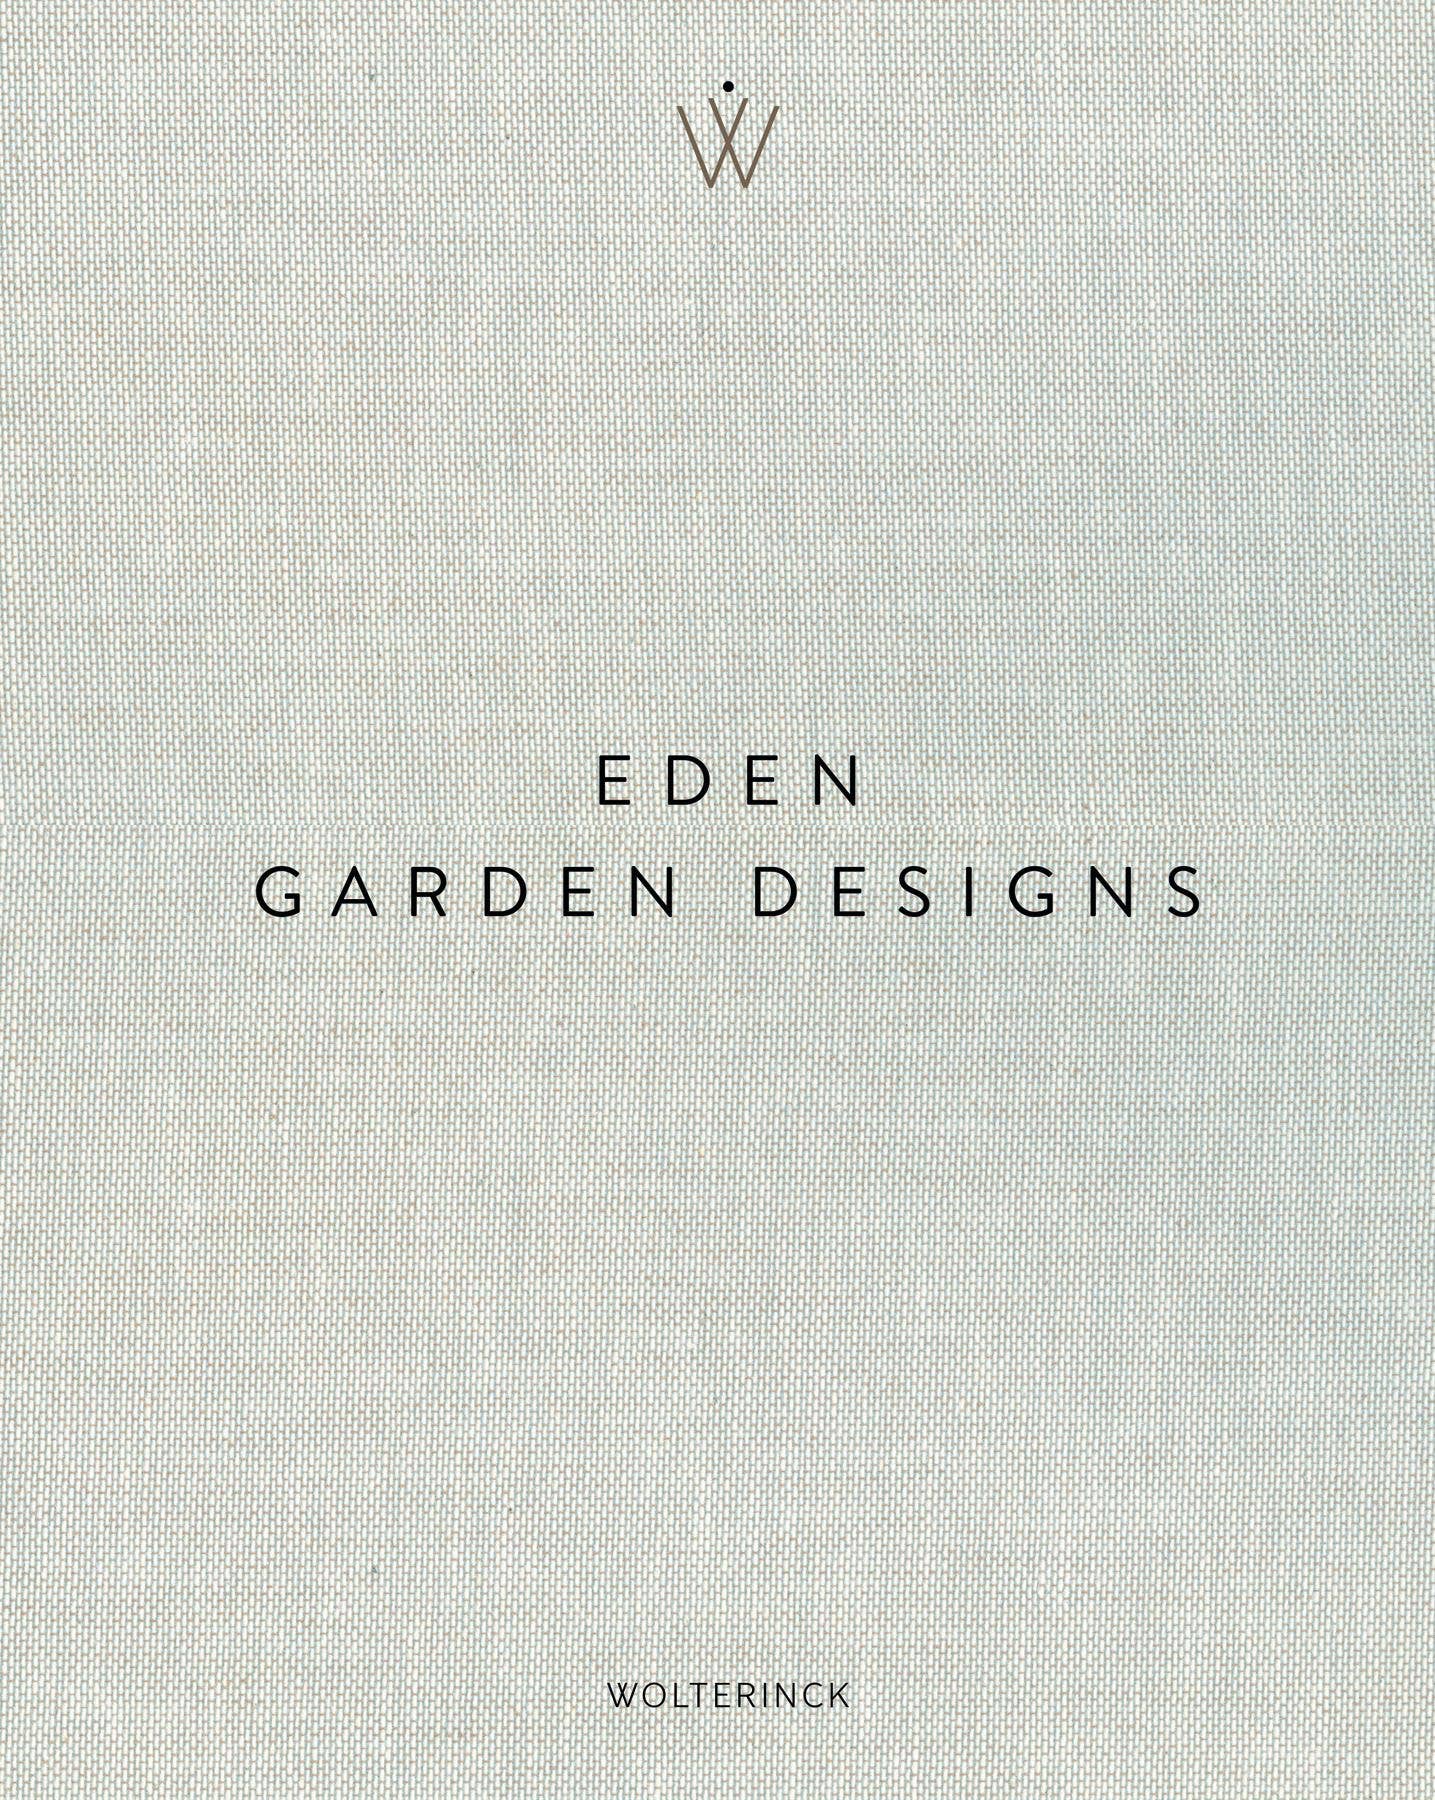 Book - Eden: Garden Designs